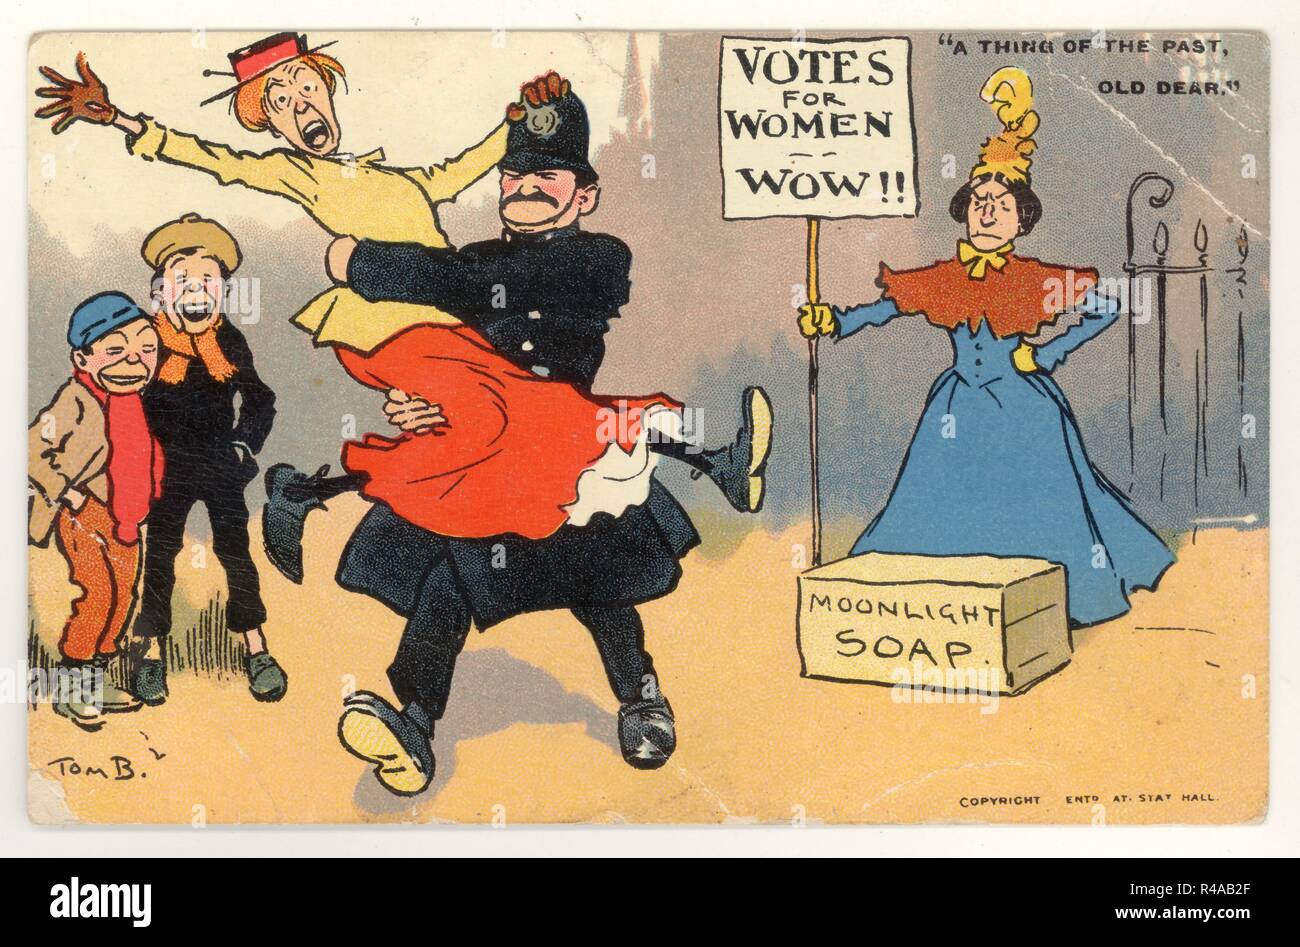 Carte postale originale de la bande dessinée de l'époque édouardienne (thème anti-suffragette). Le signe se lit "votes pour les femmes wow!!", la légende se lit "une chose du passé ancien cher", illustration de la bande dessinée par Tom Browne, Angleterre, Royaume-Uni publié , en date de 1907 Banque D'Images